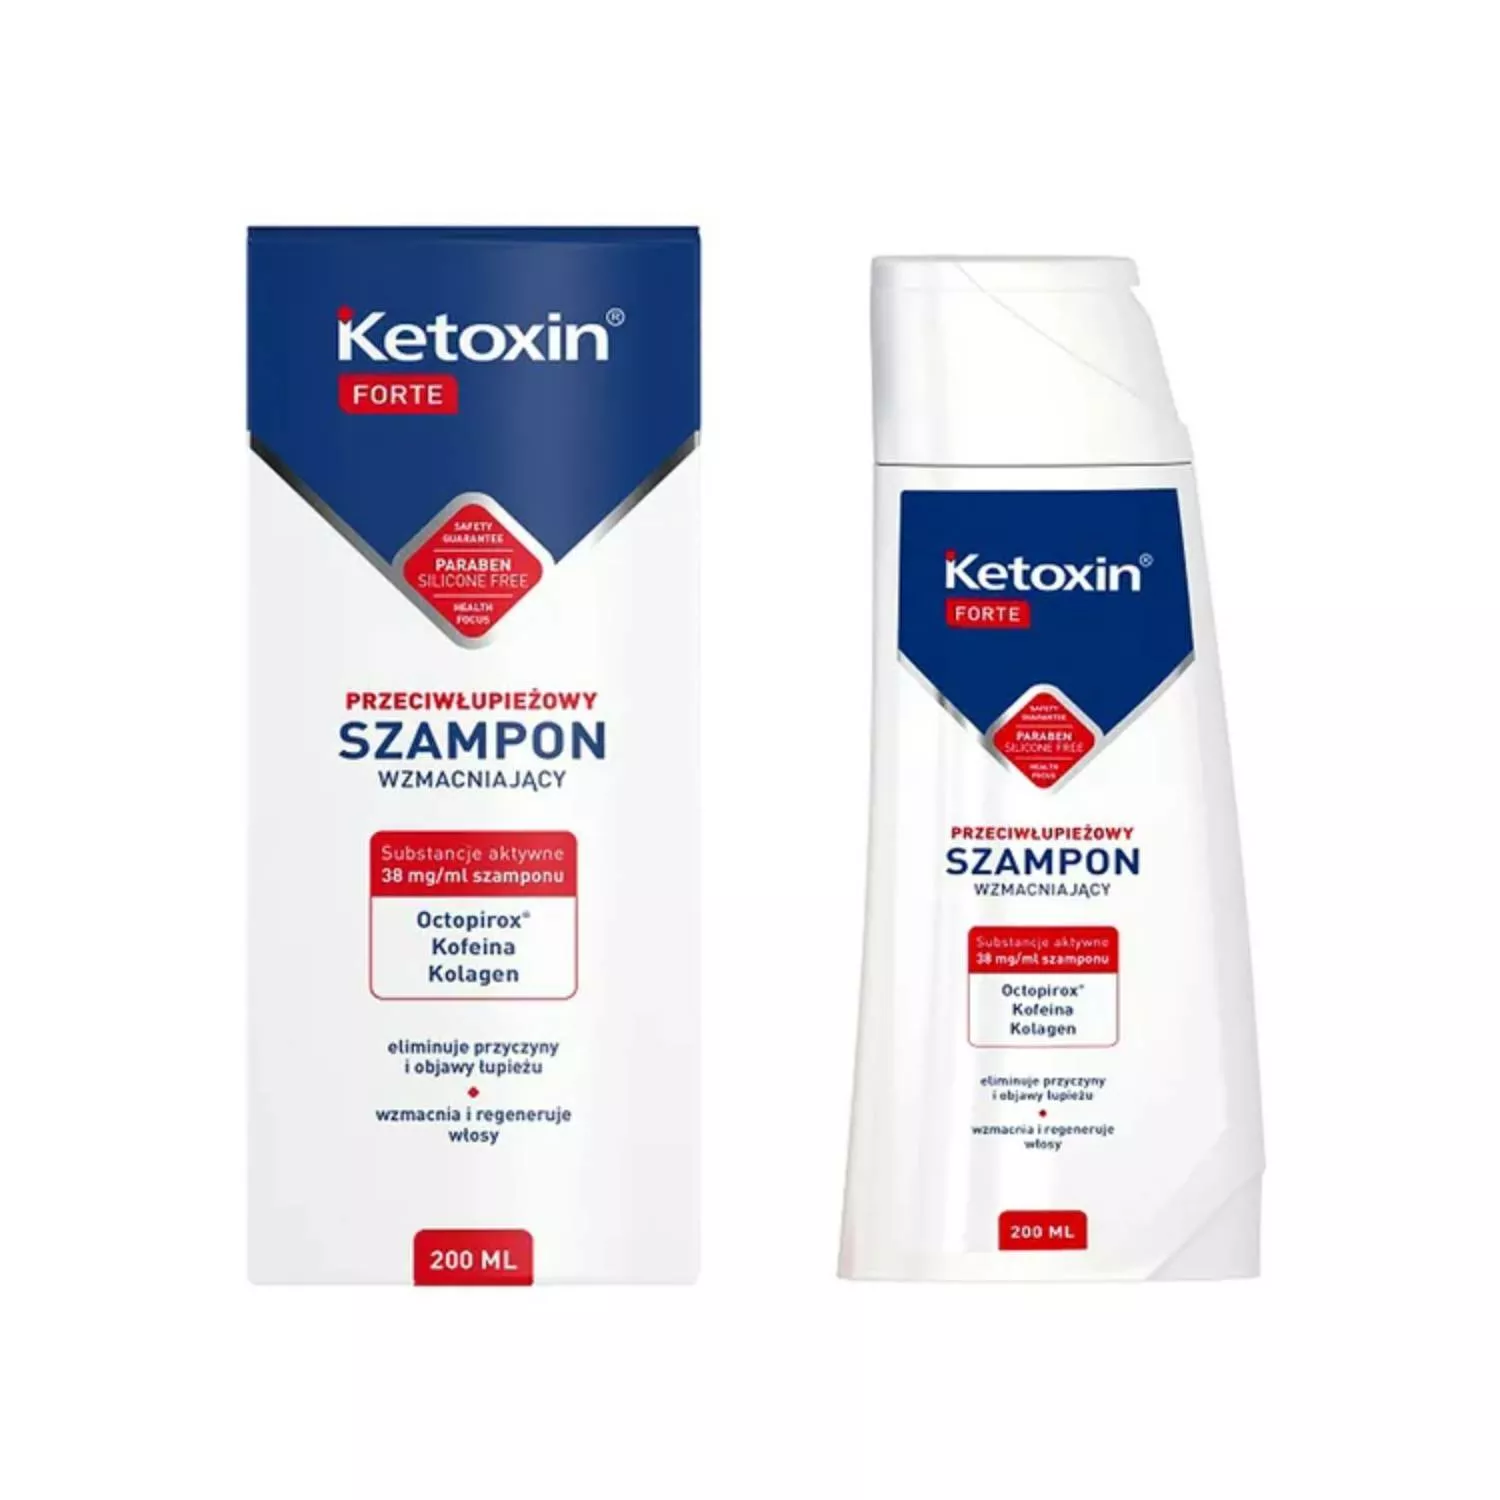 ketoxin forte nowa formuła szampon wzmacniający przeciwłupieżowy 200ml